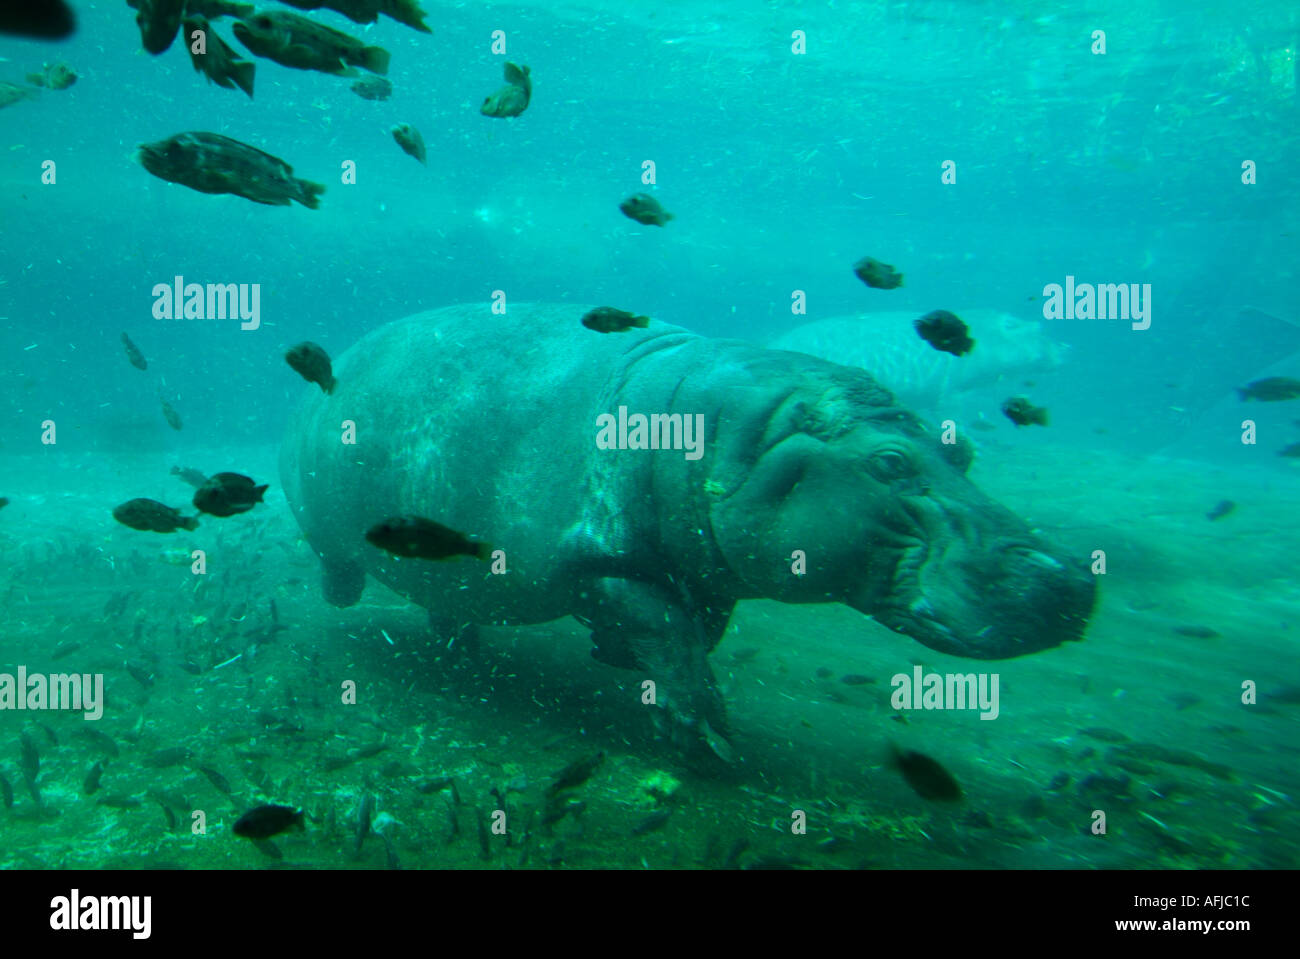 Hippo underwater swimming captive Stock Photo